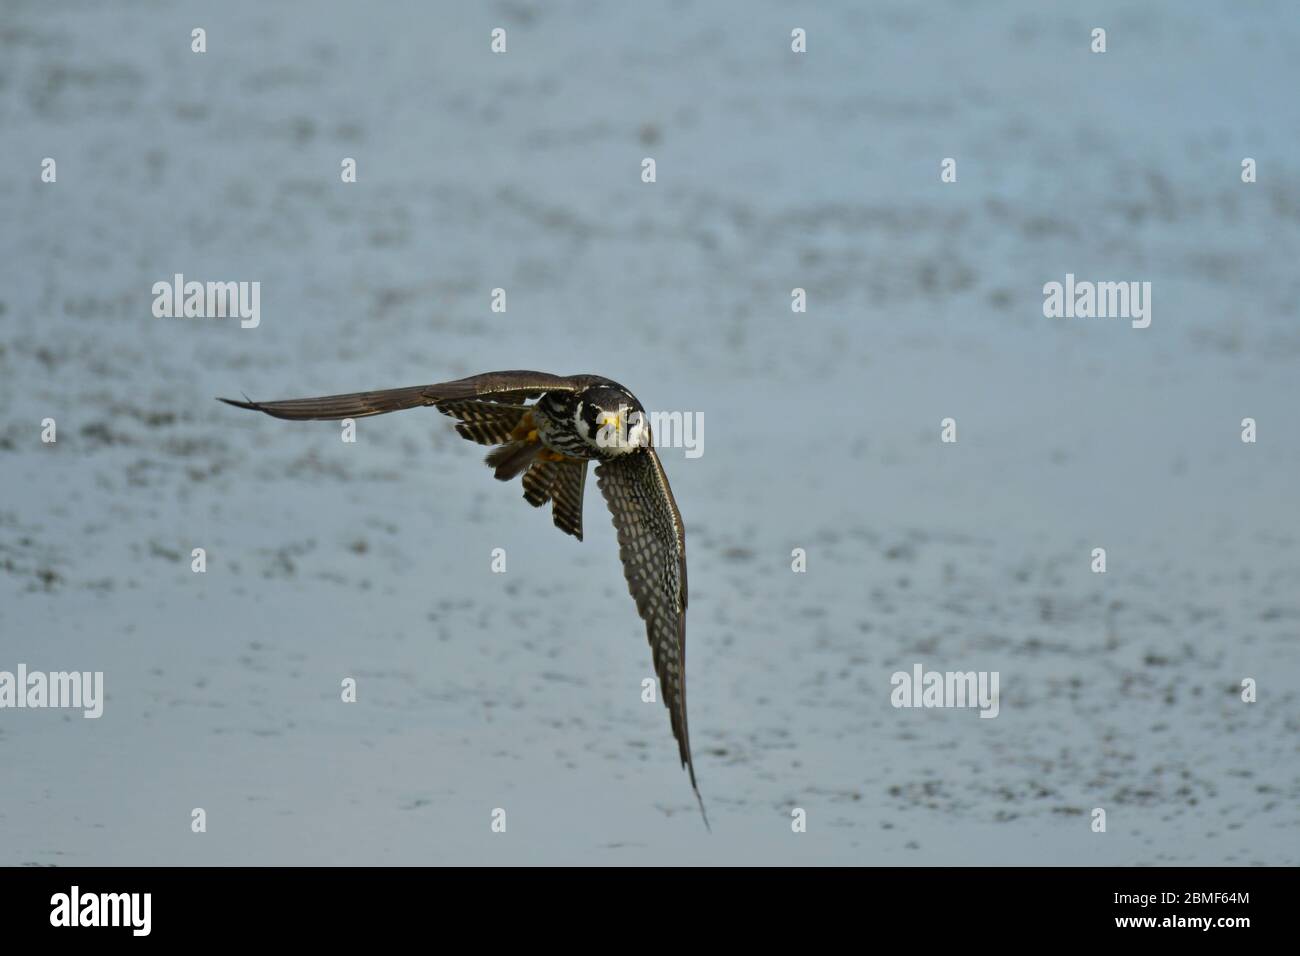 Das eurasische Hobby Falco subbuteo im Flug Stockfoto